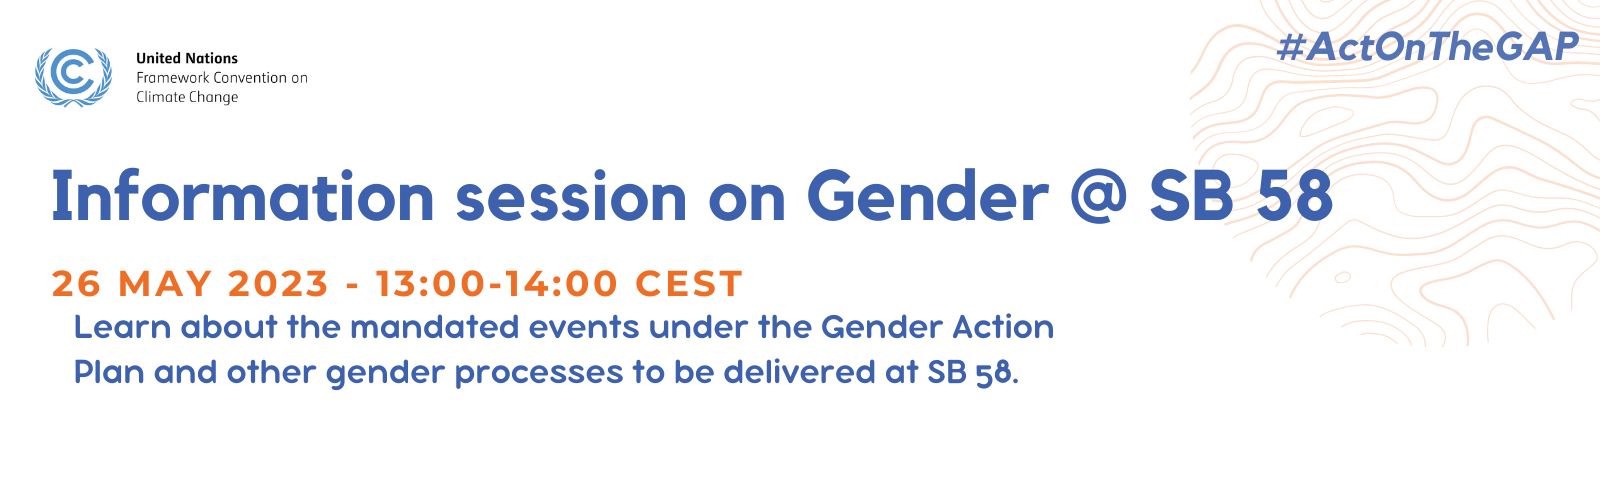 Information session on gender SB 58 - banner